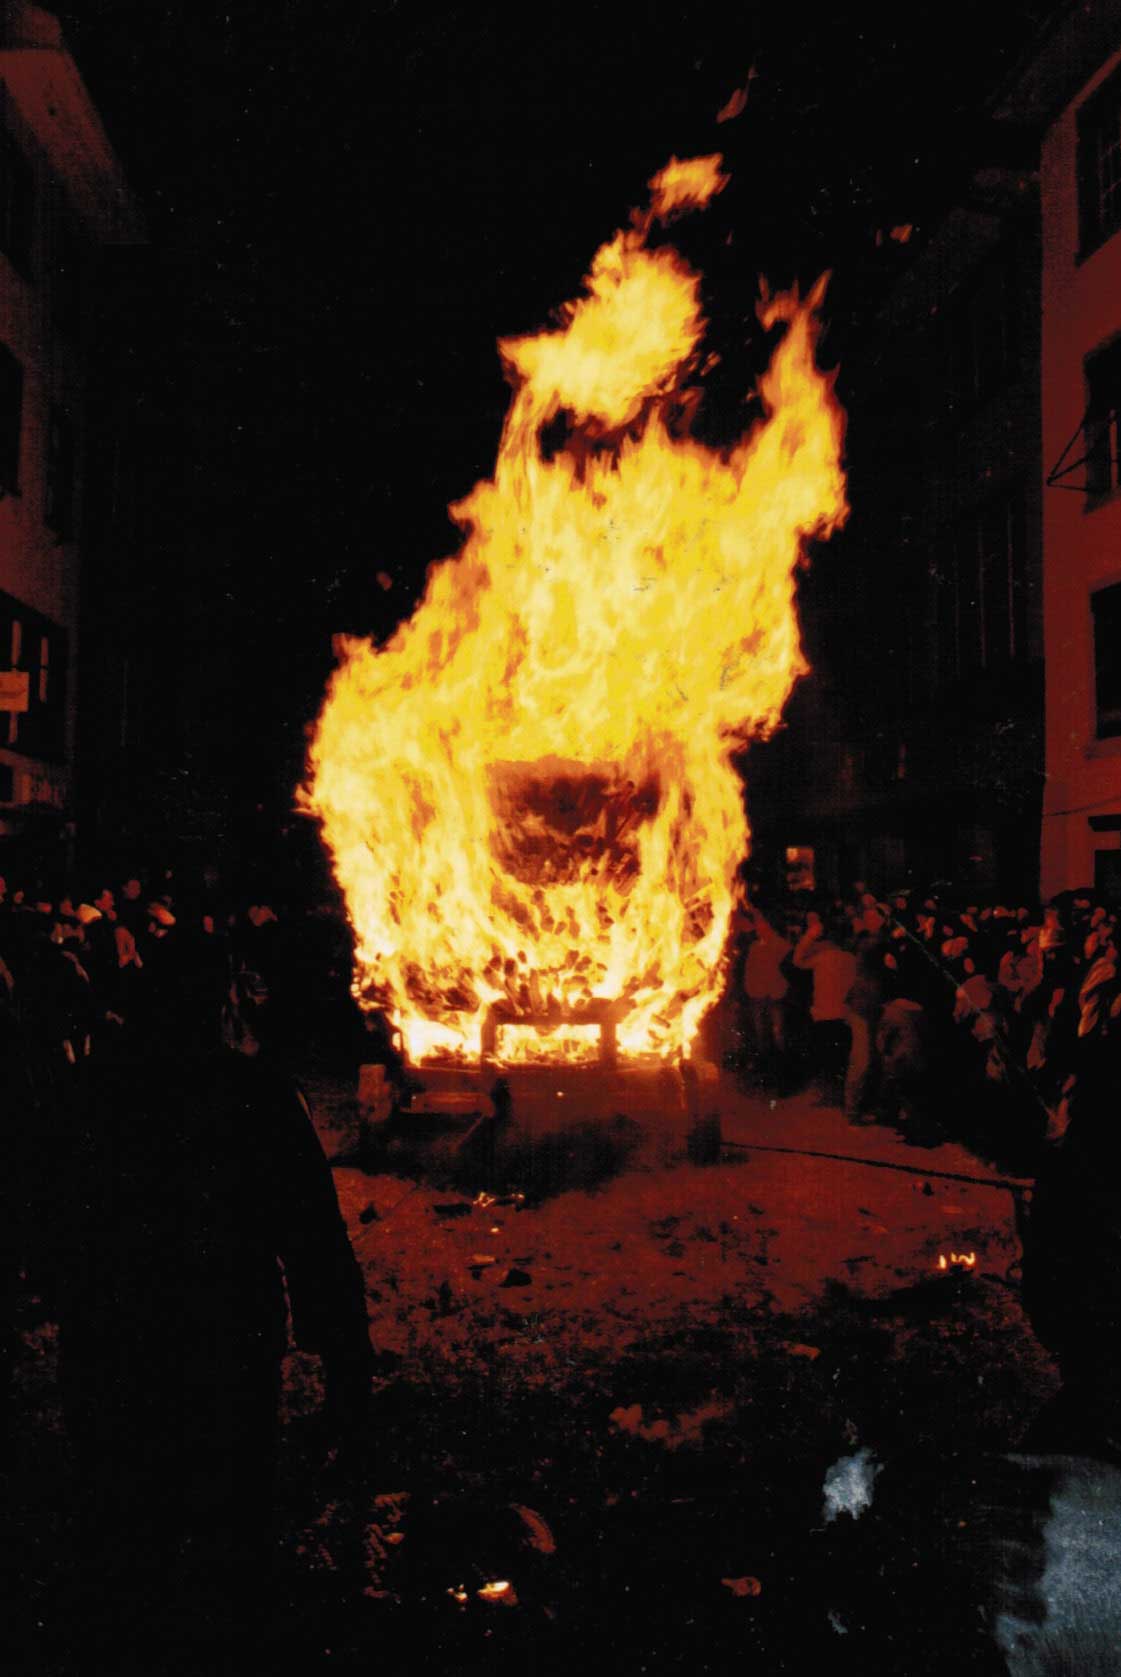 Die Zuschauermenge weicht vor der infernalischen Hitze des brennenden Feuerwagens zurück, 2004 © Hanspeter Meyer